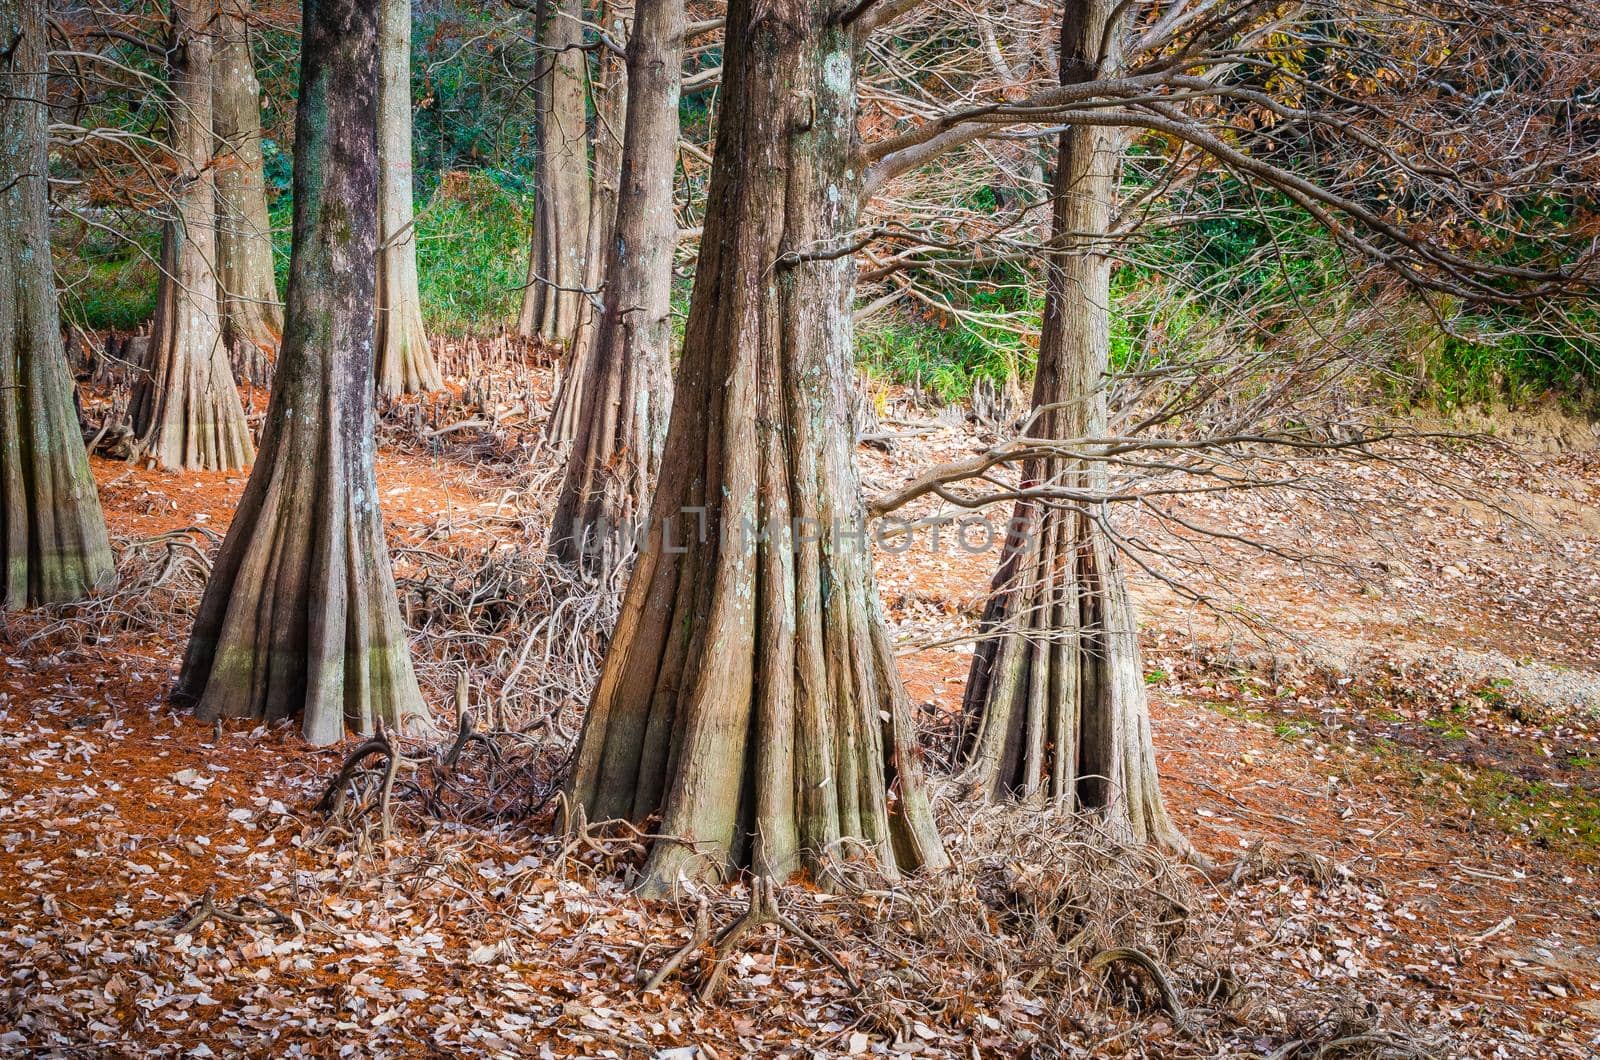 Bald Cypress trees. Kyudainomori forest in Sasaguri, Fukuoka, Japan.